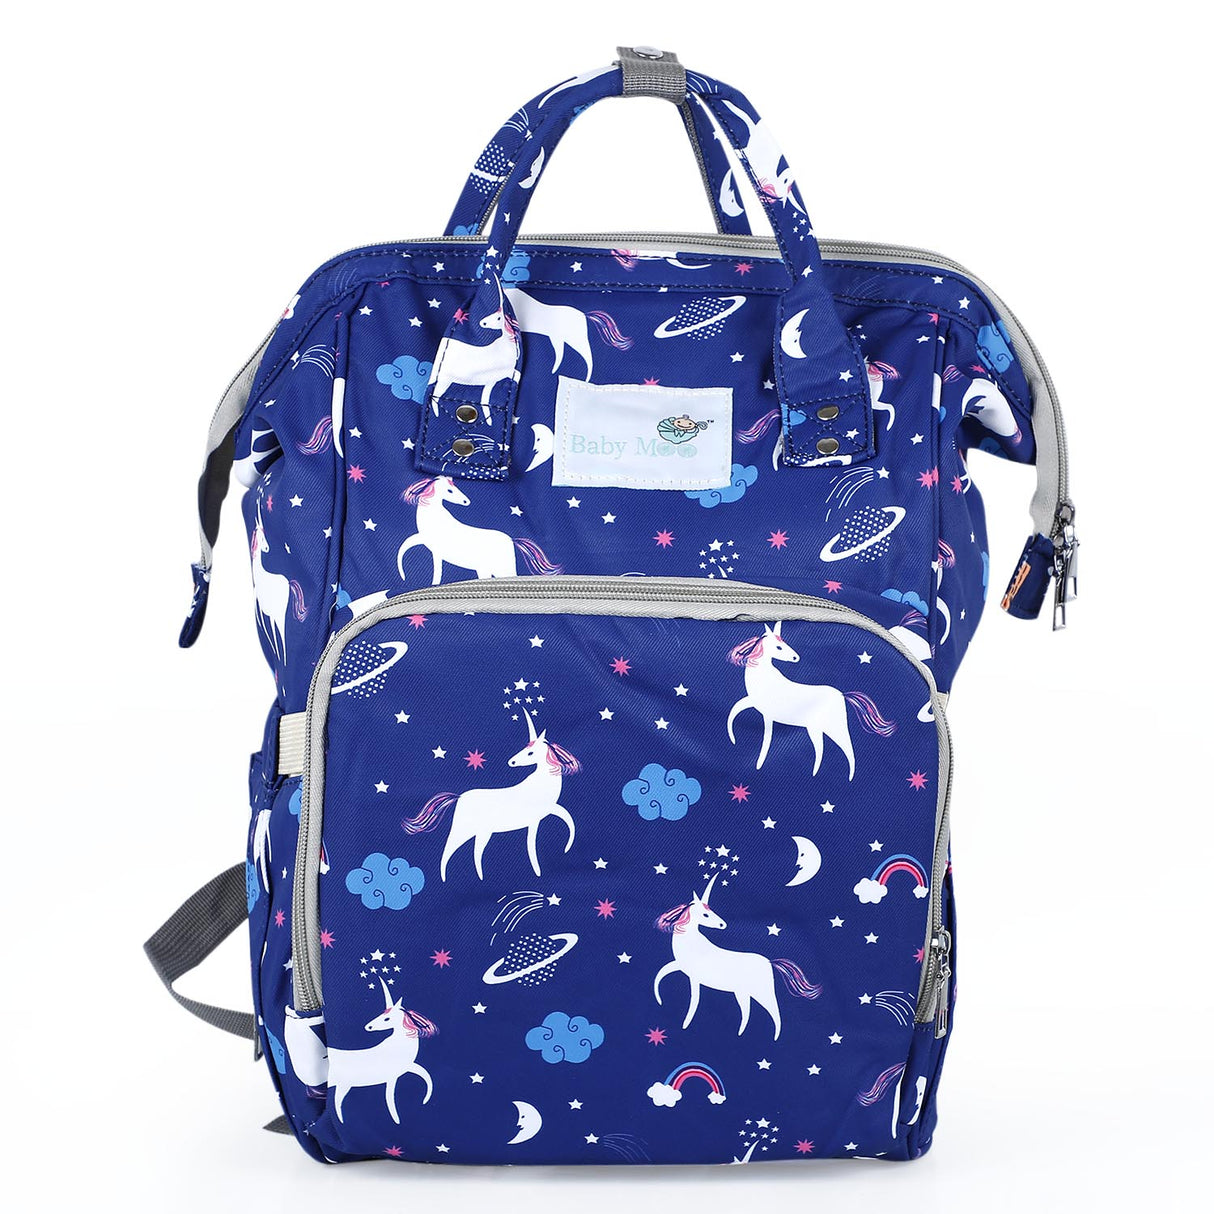 Baby Moo Unicorn Multifunctional Diaper Bag